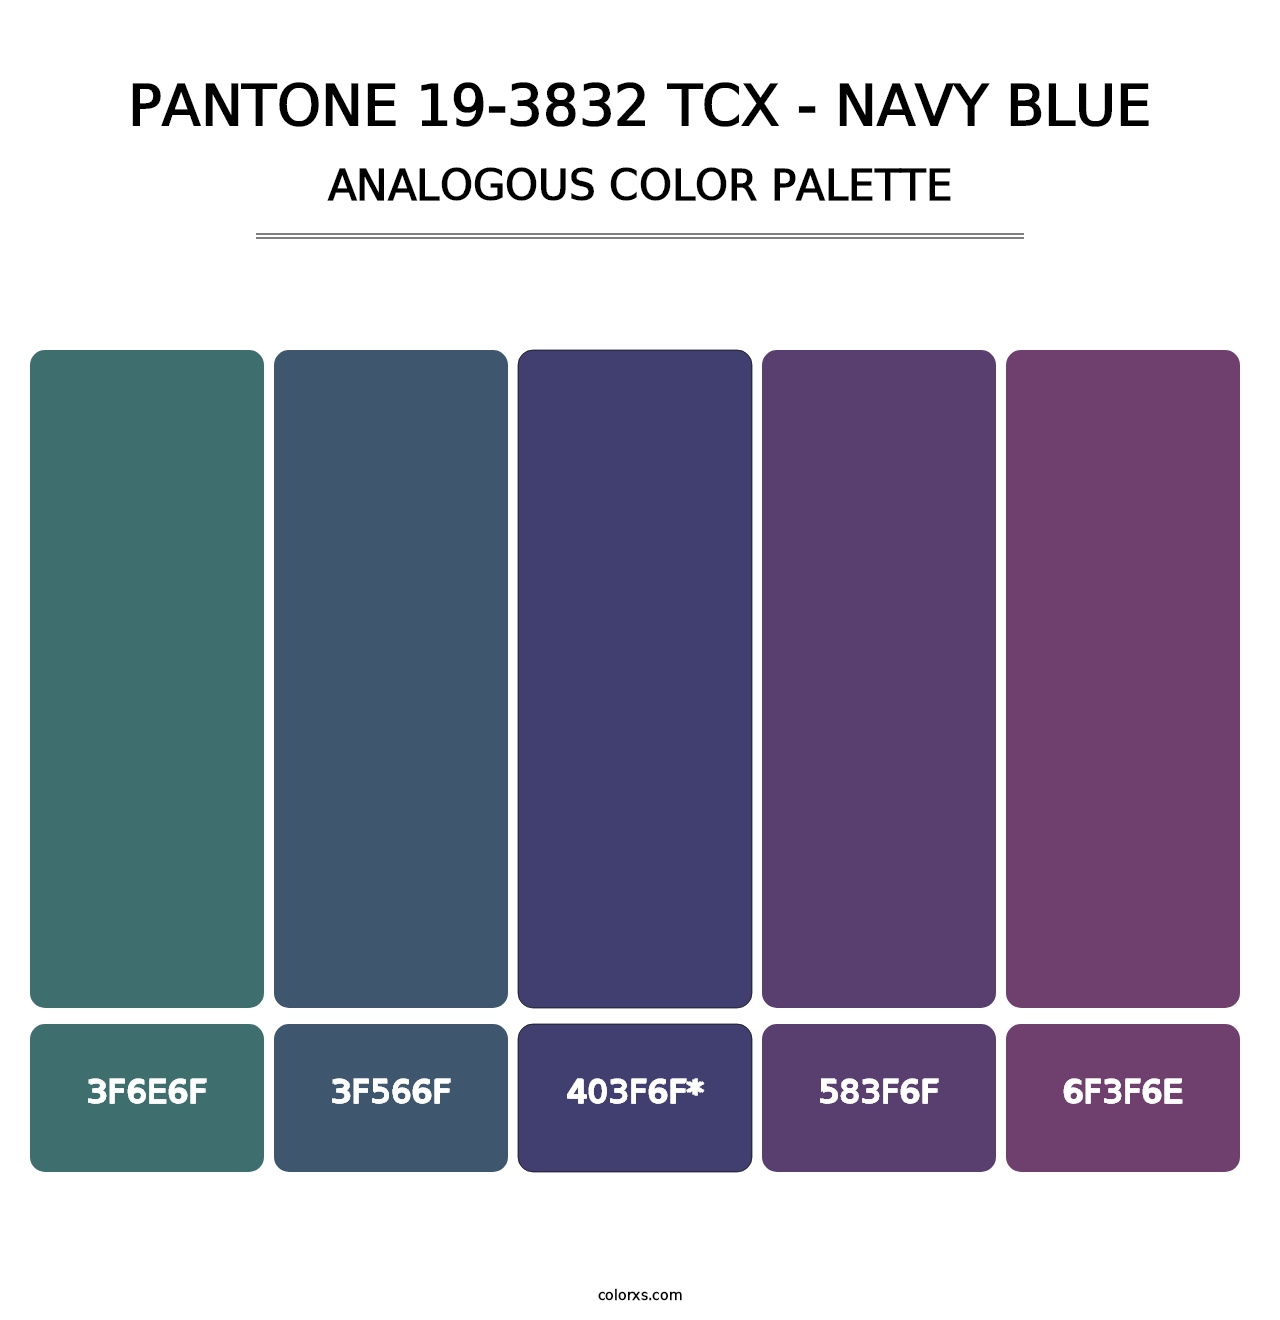 PANTONE 19-3832 TCX - Navy Blue - Analogous Color Palette